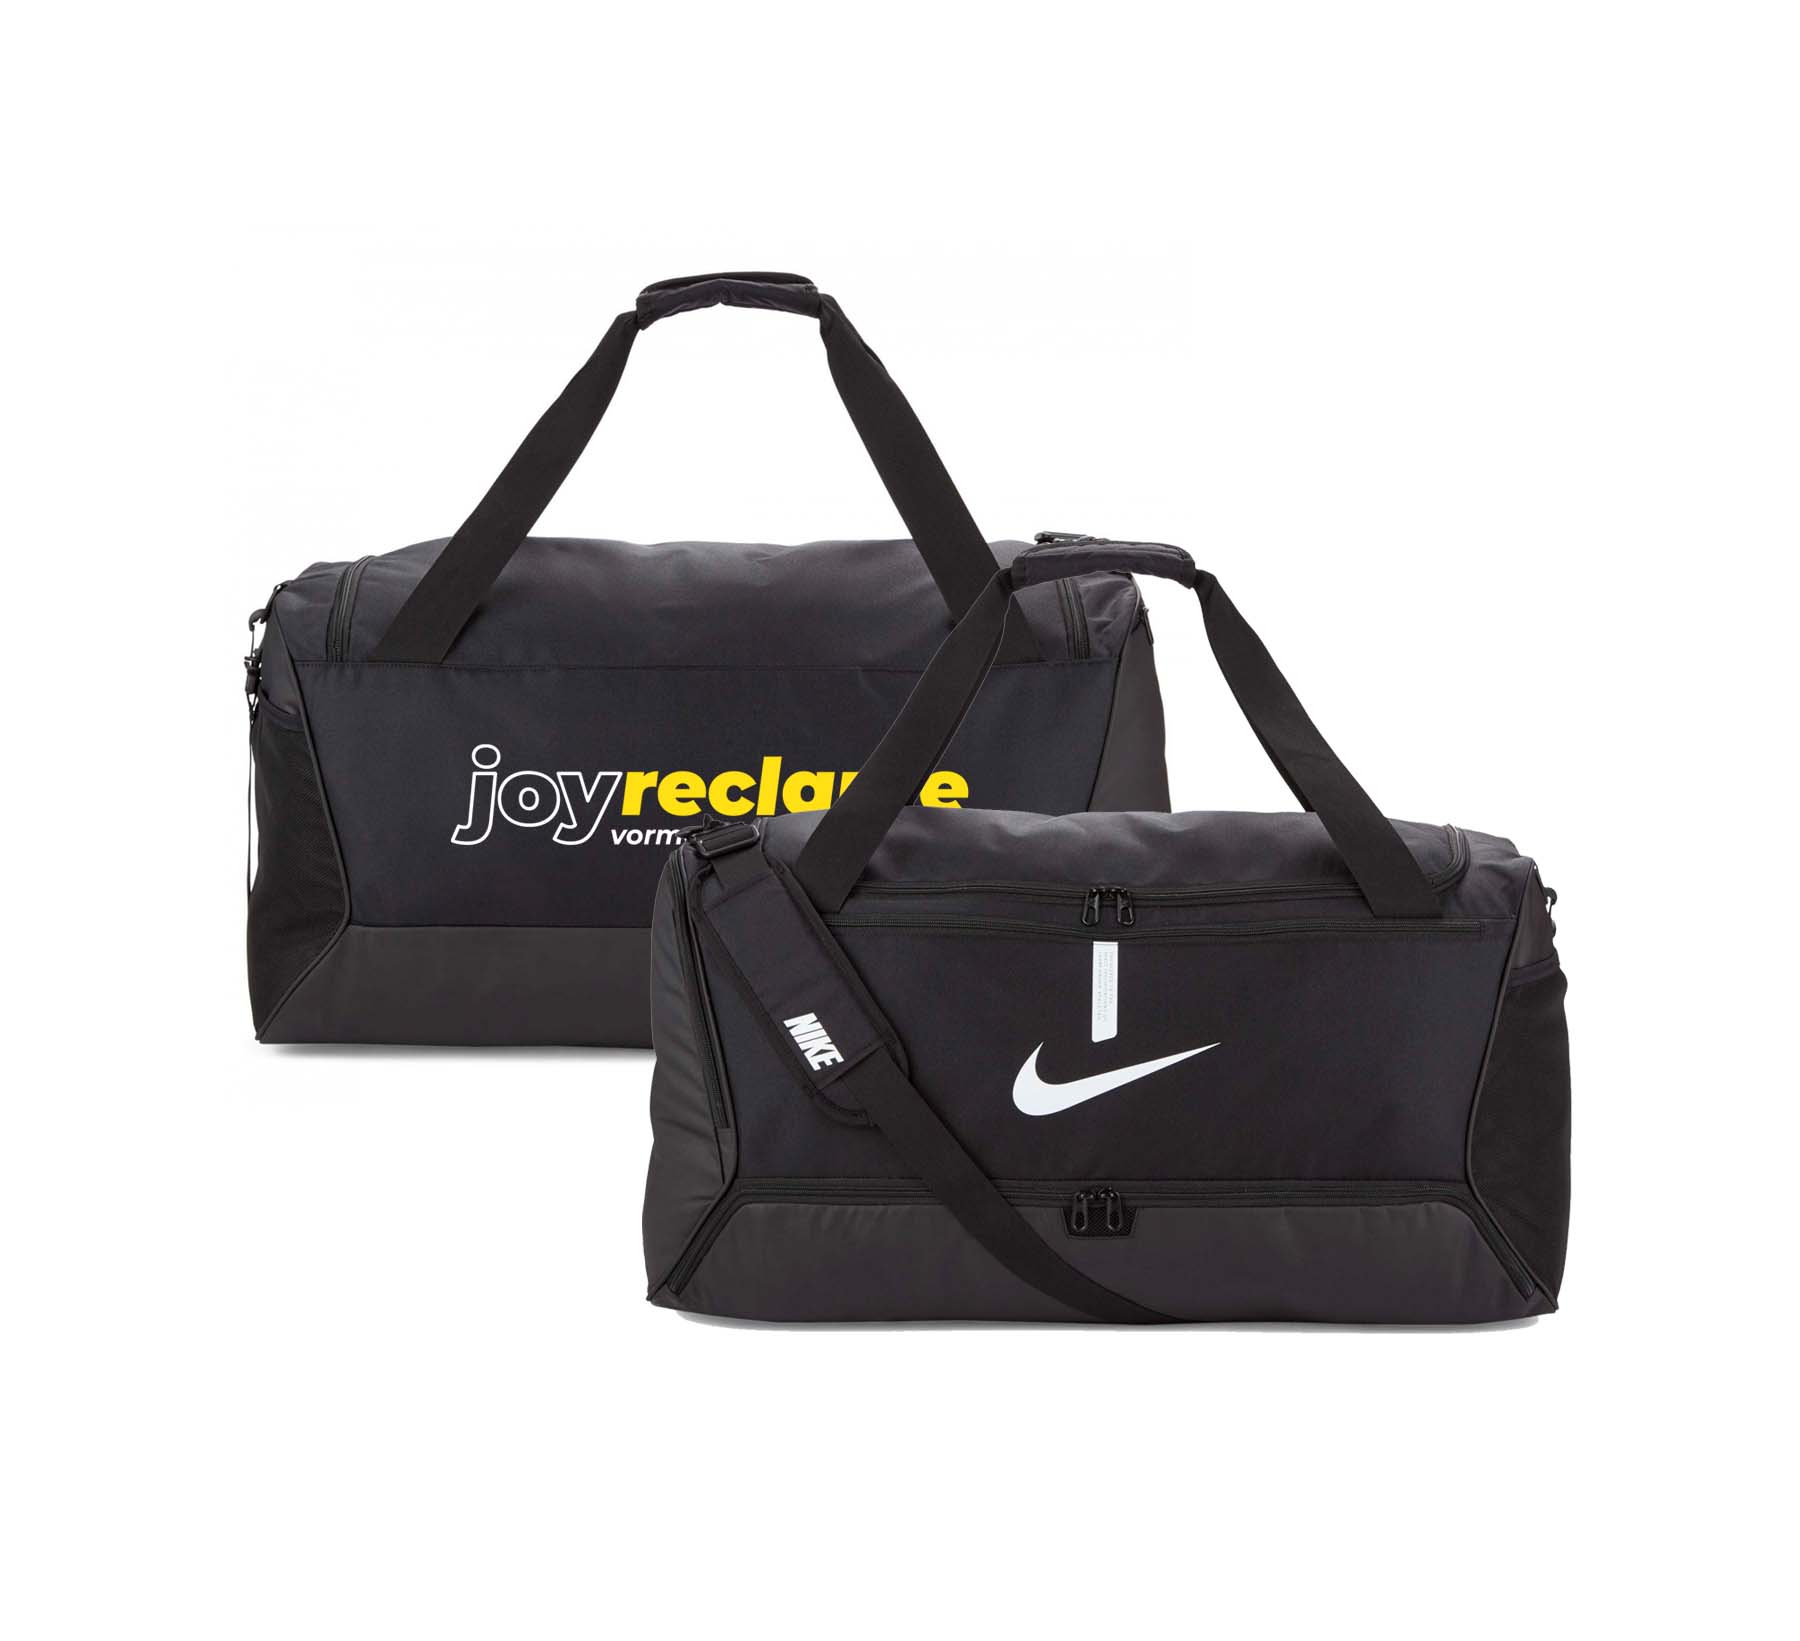 Nike sporttassen bedrukken - Vanaf 1 met ontwerp!